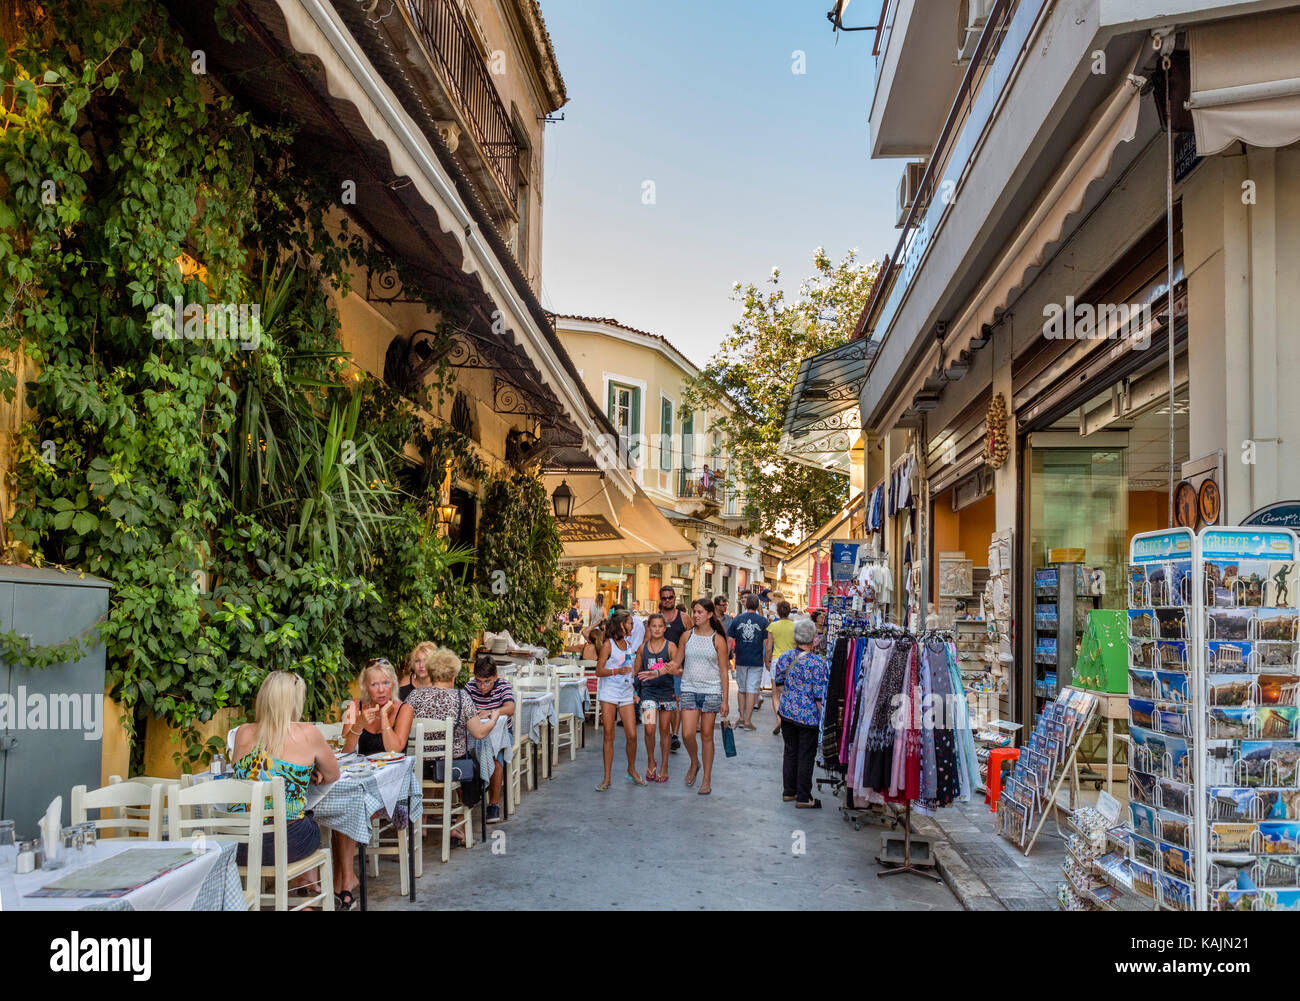 Geschäfte und Taverne auf Adrianou Street im Stadtteil Plaka, Athens, Griechenland Stockfoto